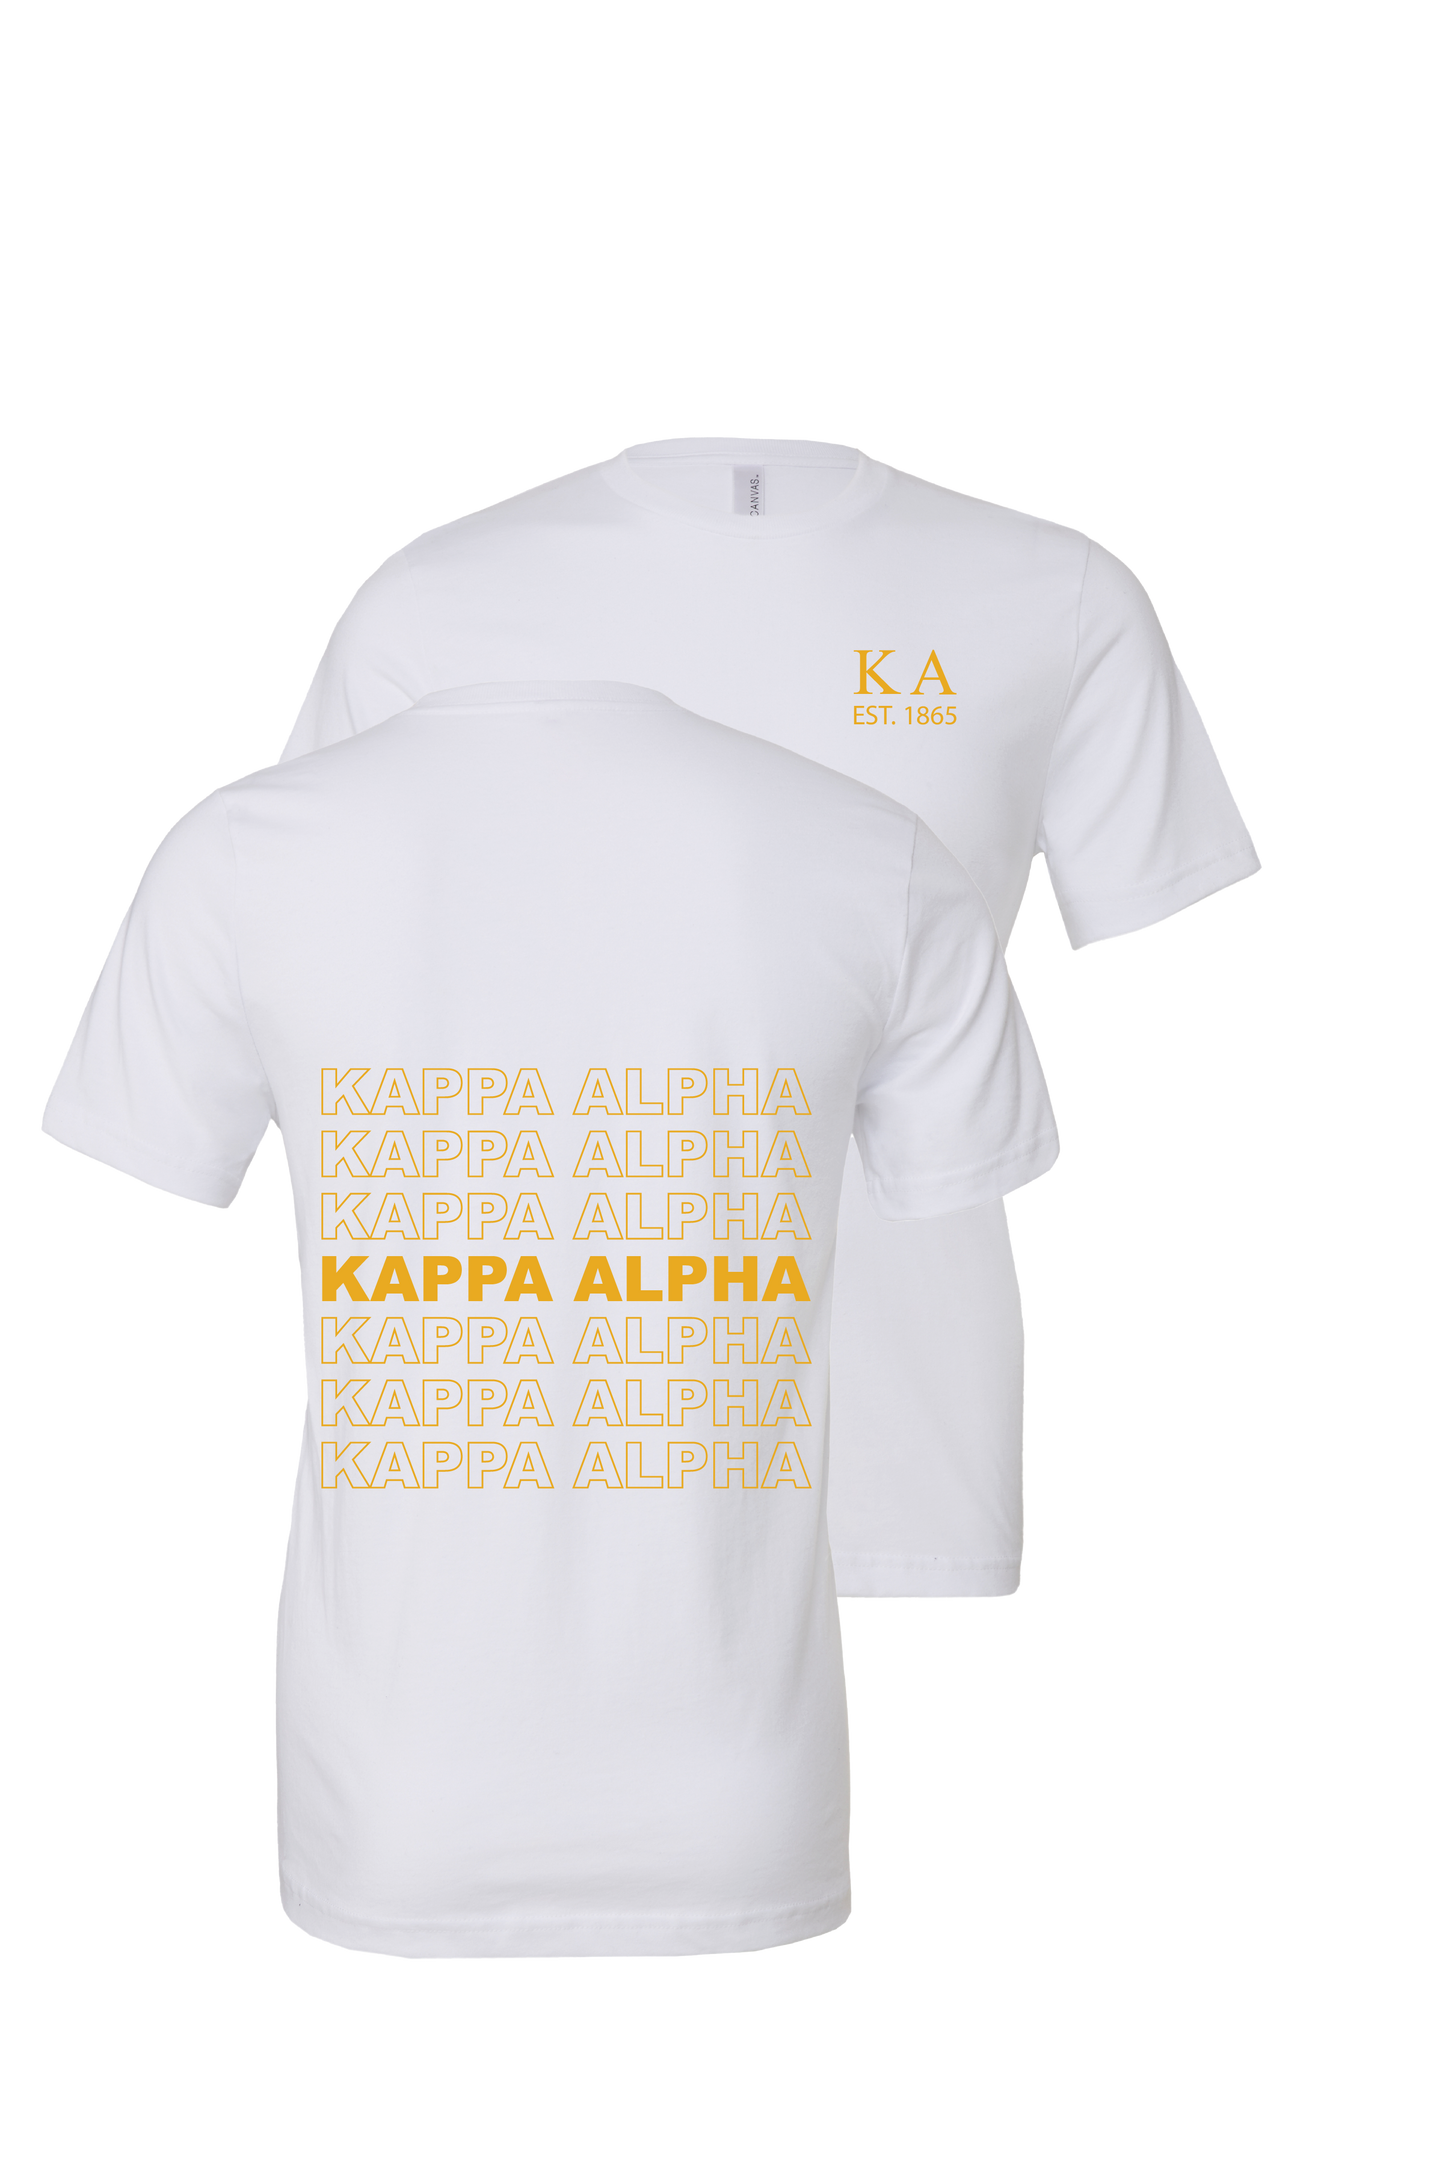 Kappa Alpha Order Repeating Name Short Sleeve T-Shirts